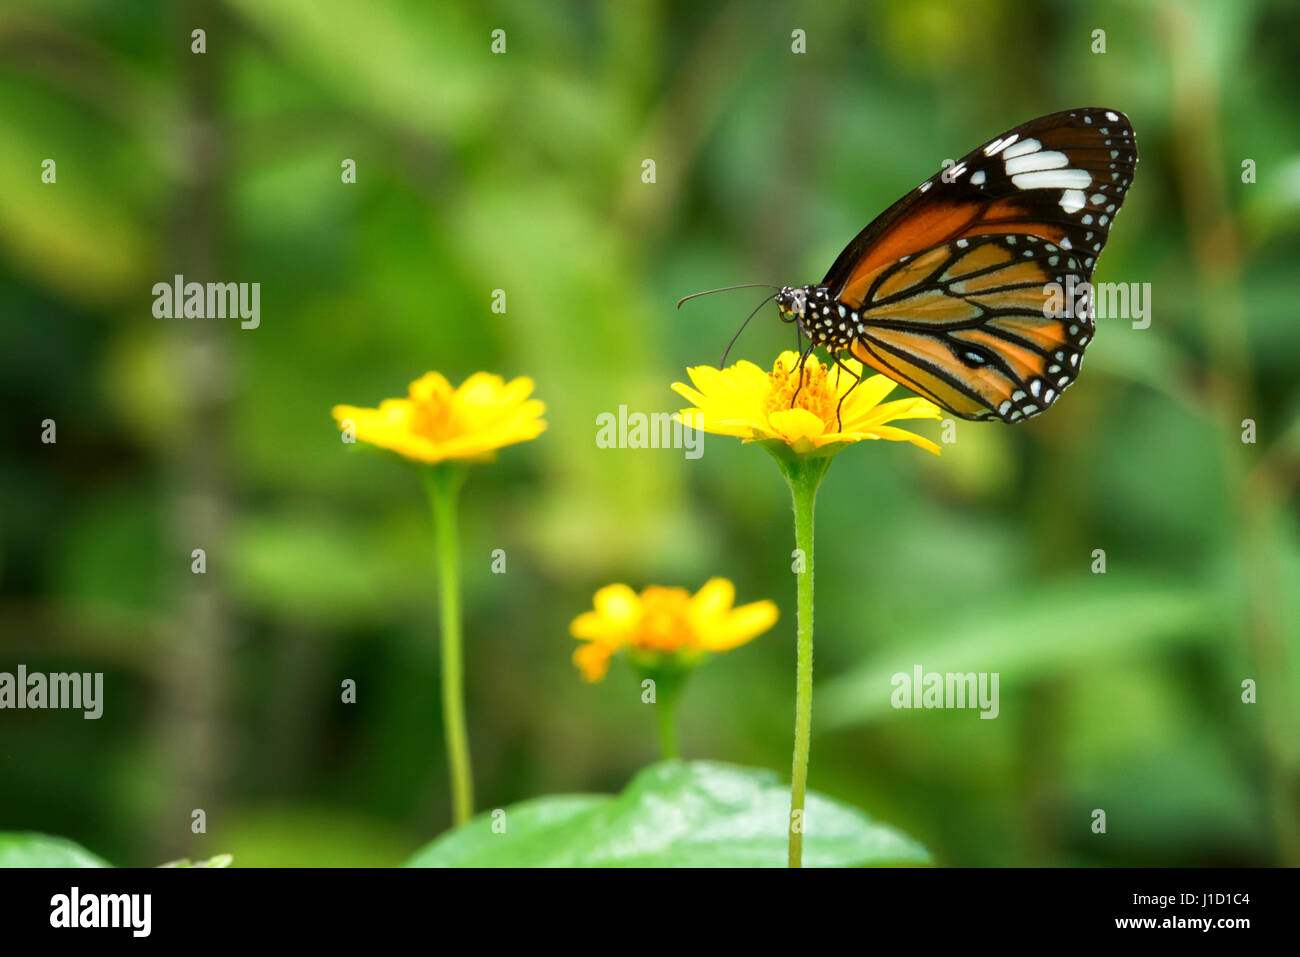 Der gestreifte Tiger (Danaus genotia) sitzt an einer gelben Pflanze. Der  Schmetterling hat seinen Namen wegen der Raupen, die gelbe und schwarze  Streifen haben, die einem Tiger ähneln. Die hellen Farben warnen